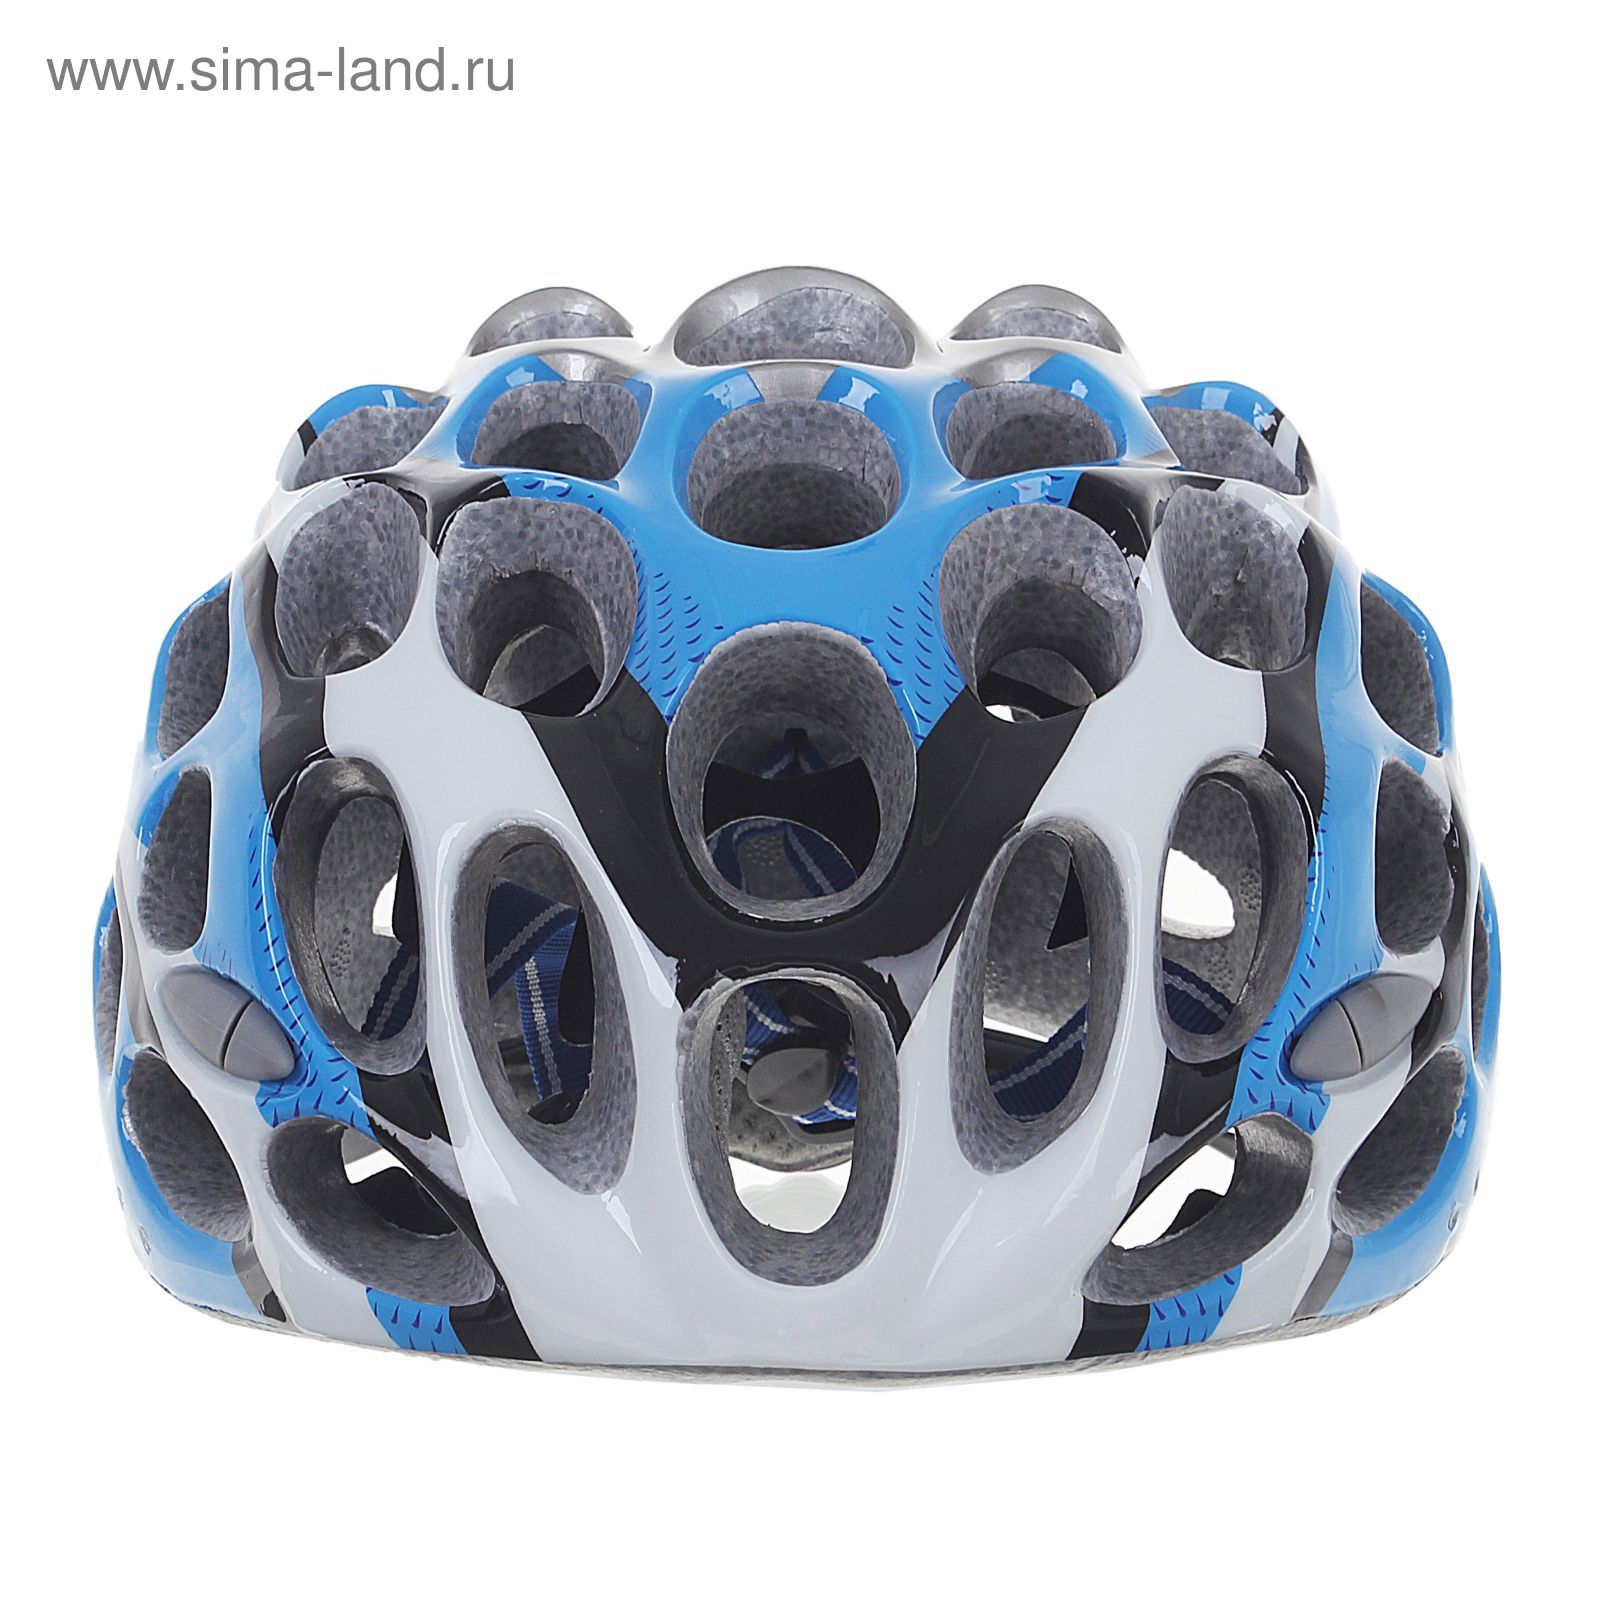 Шлем велосипедиста взрослый ОТ-T39, голубой, диаметр 54 см